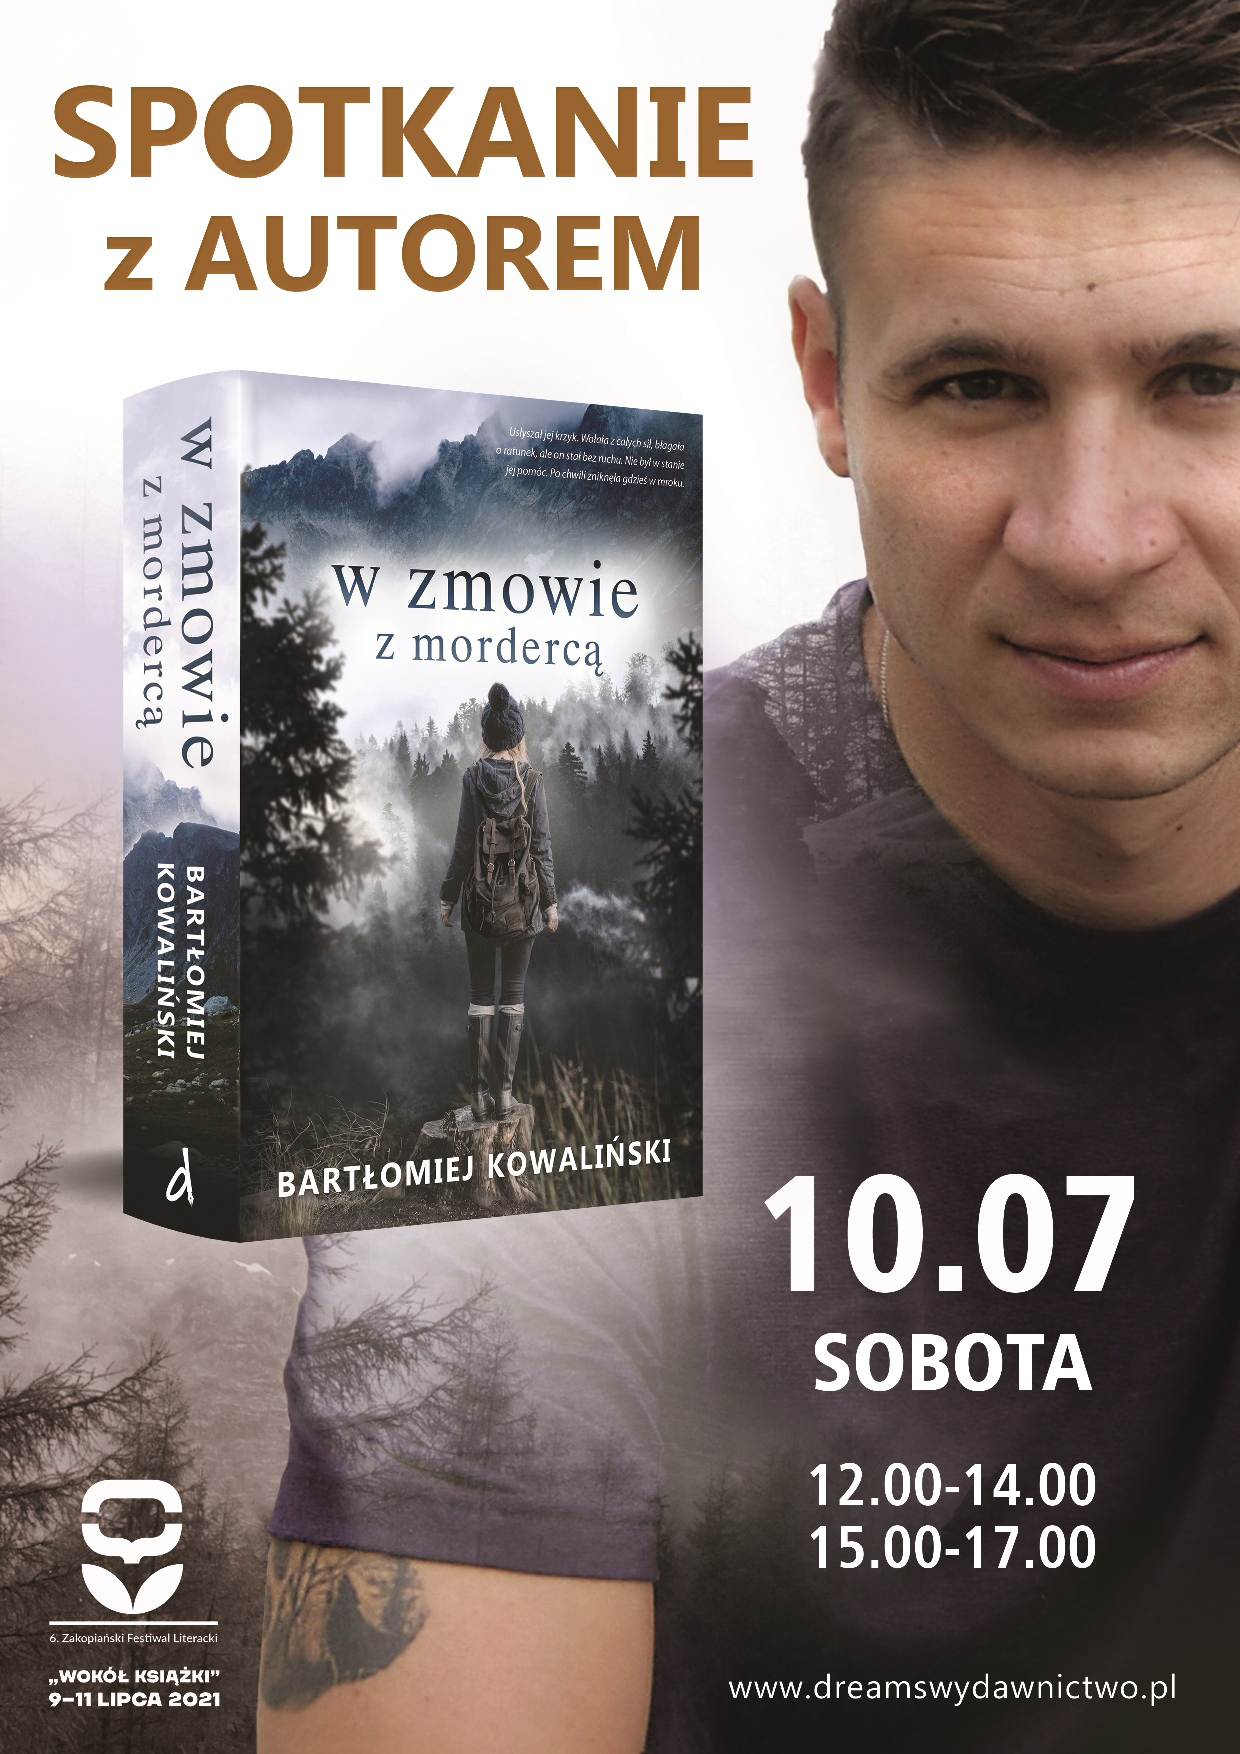 Spotkanie z autorem Bartoszem Kowalińskim